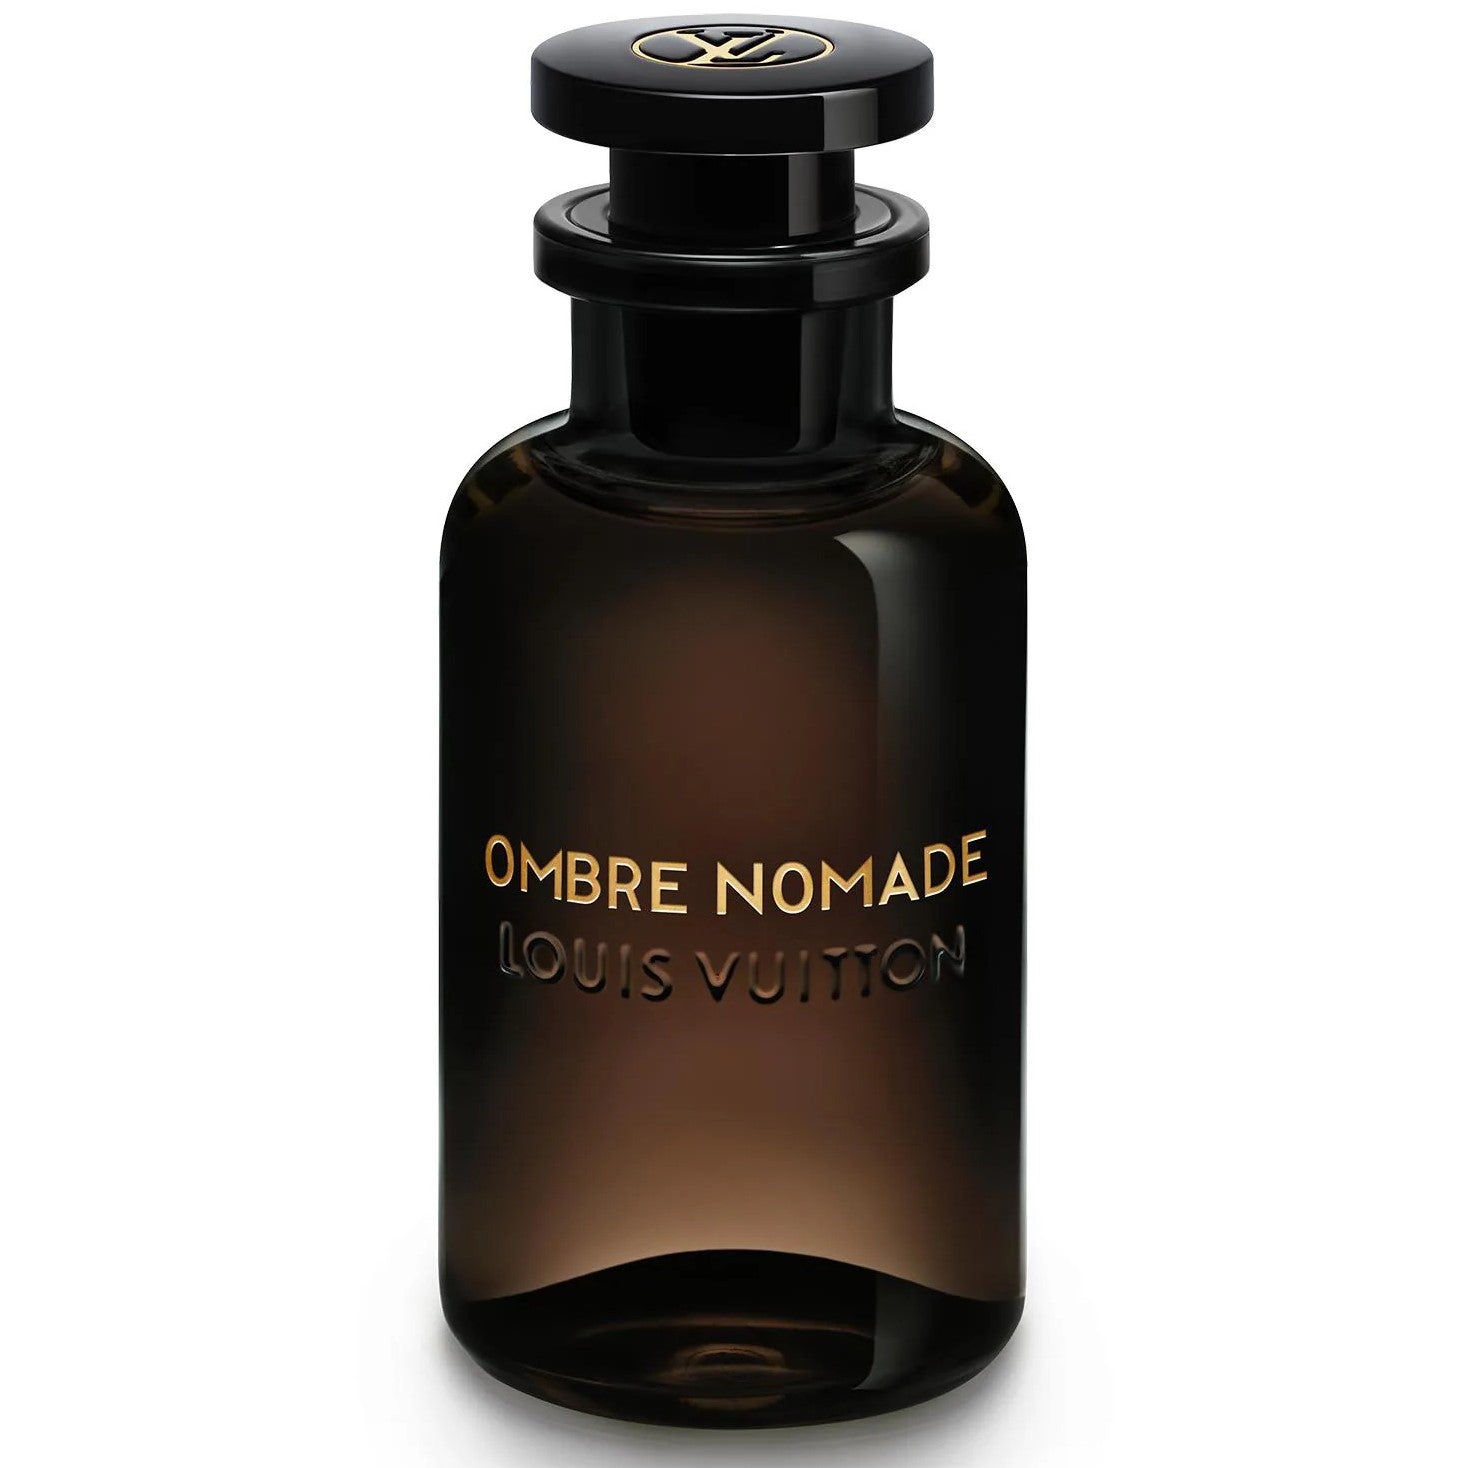 Louis Vuitton Ombre Nomade Eau de Parfum Unisexparfüm Probe Abfüllung Tester Parfüm 0,5 ml 1 ml 2 ml 5 ml